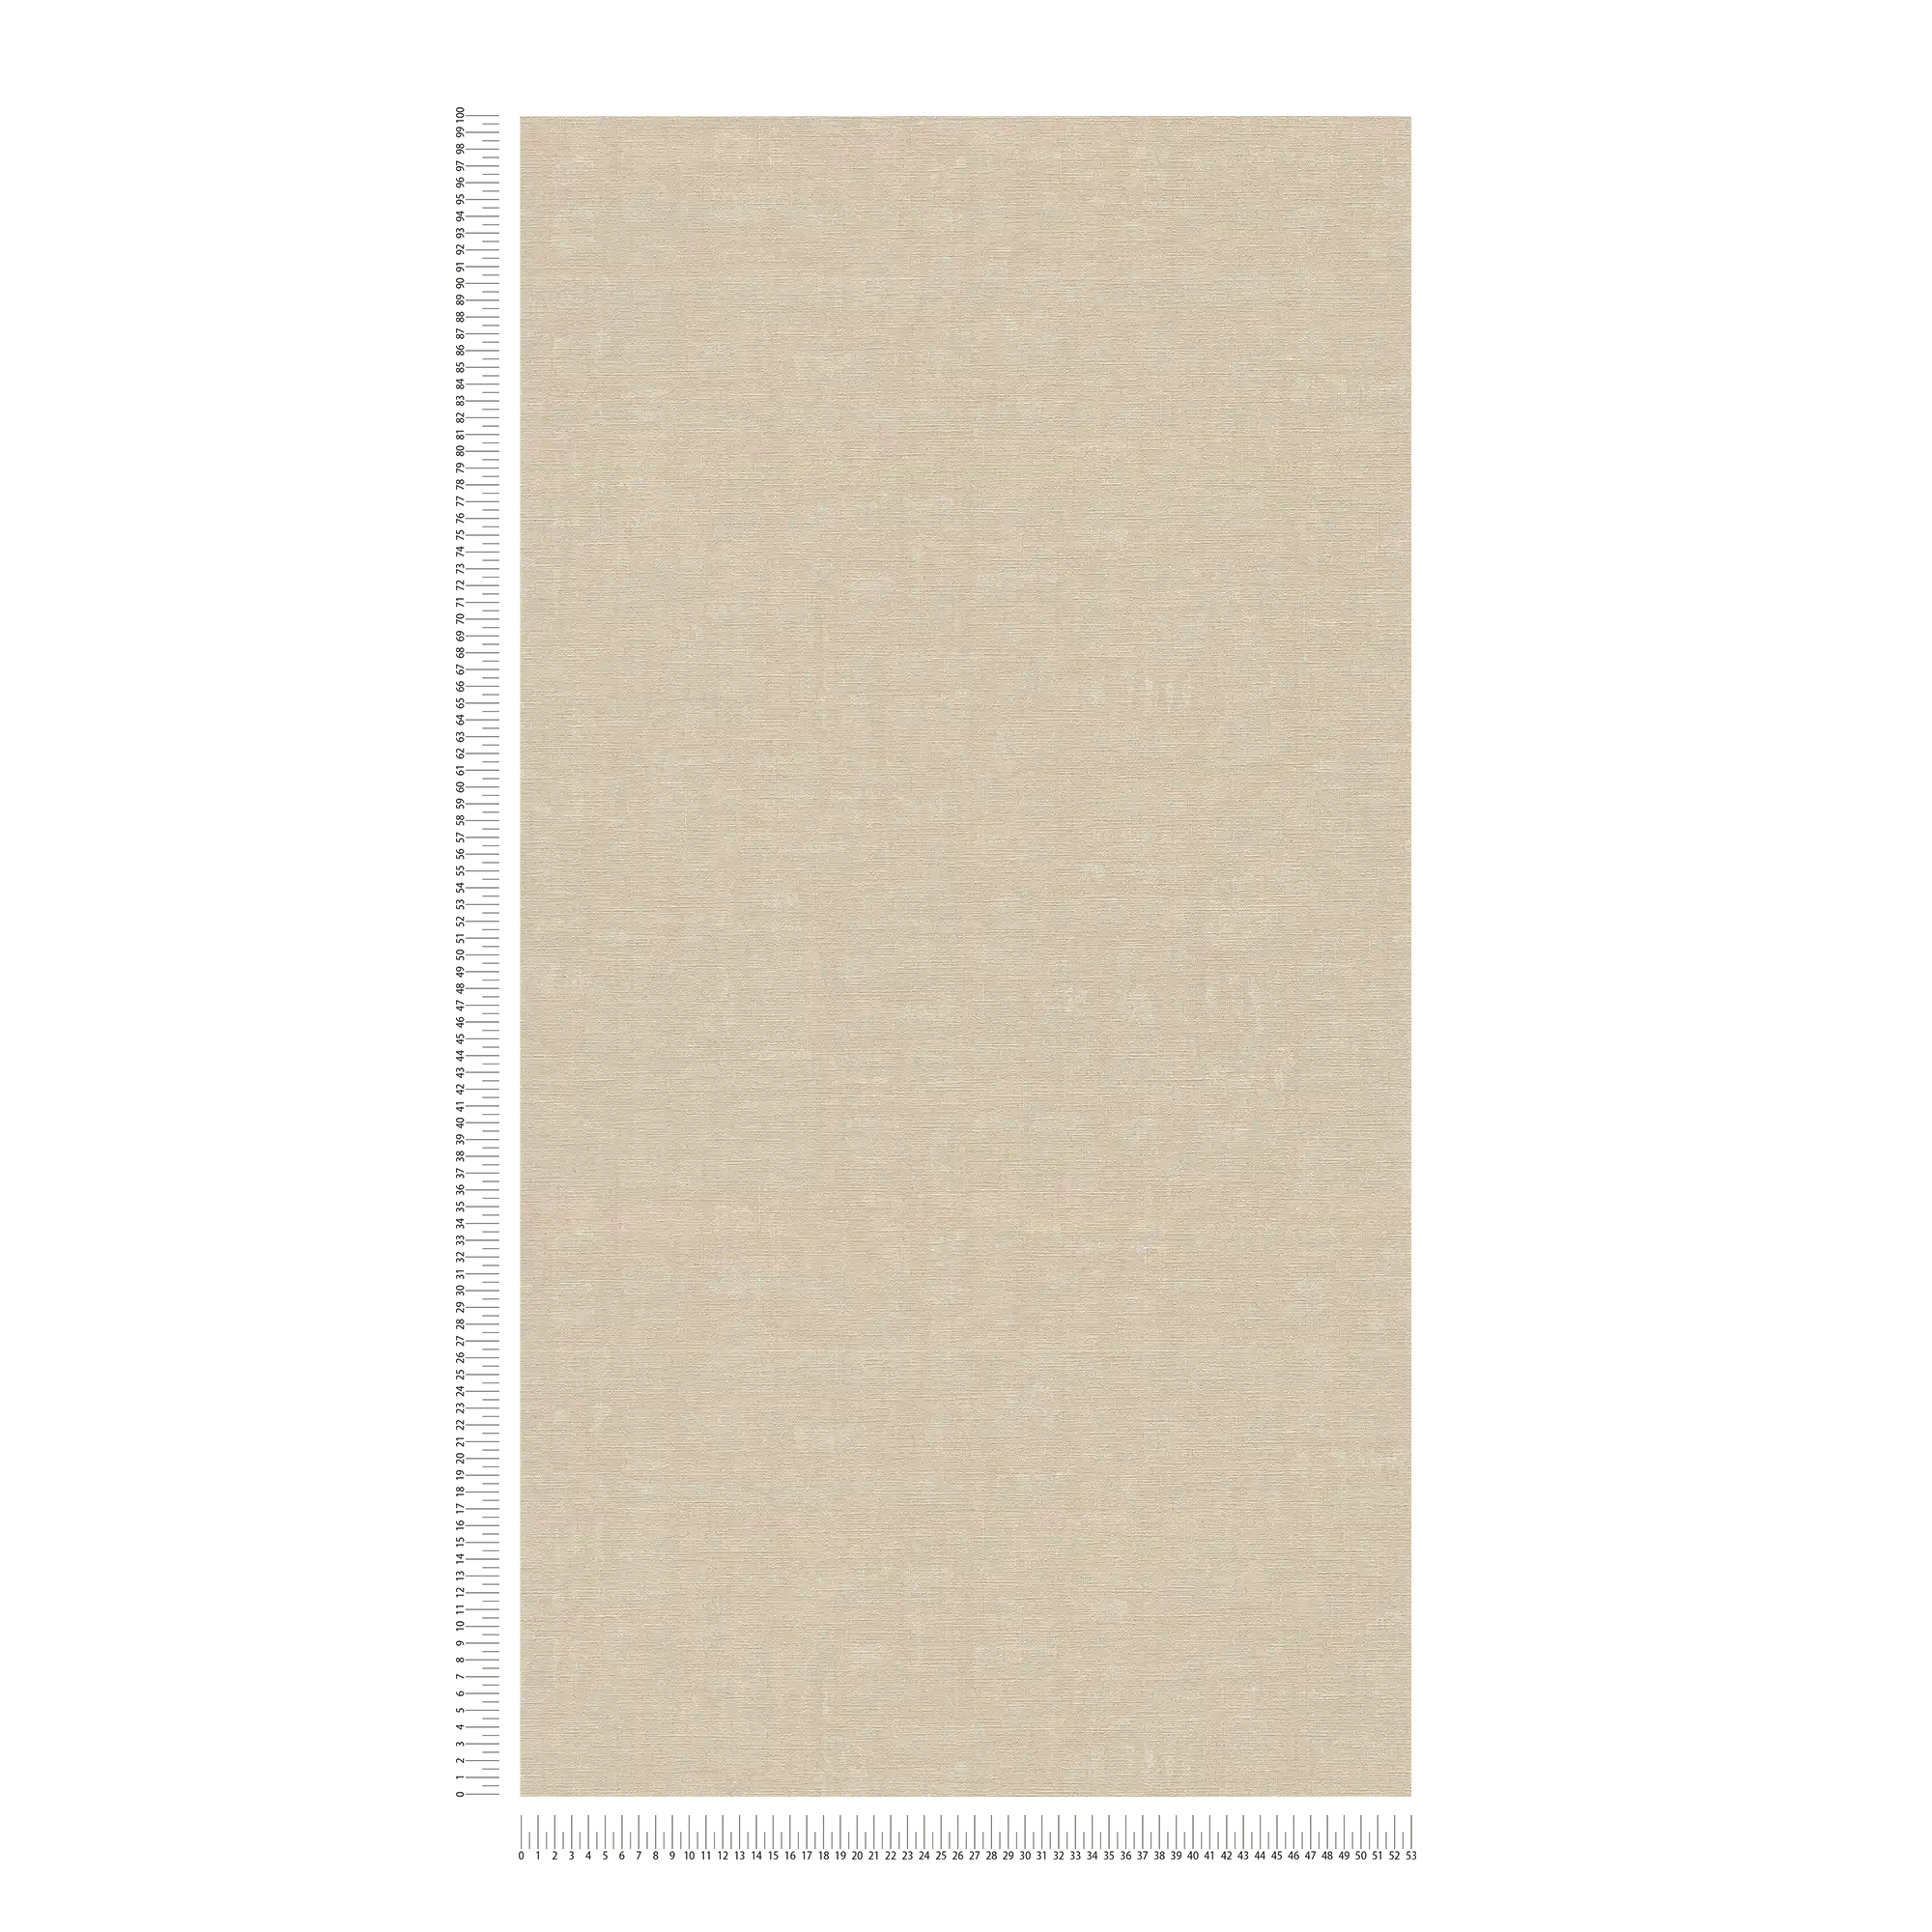             Melierte Tapete unifarben mit Strukturdesign – Grau, Beige
        